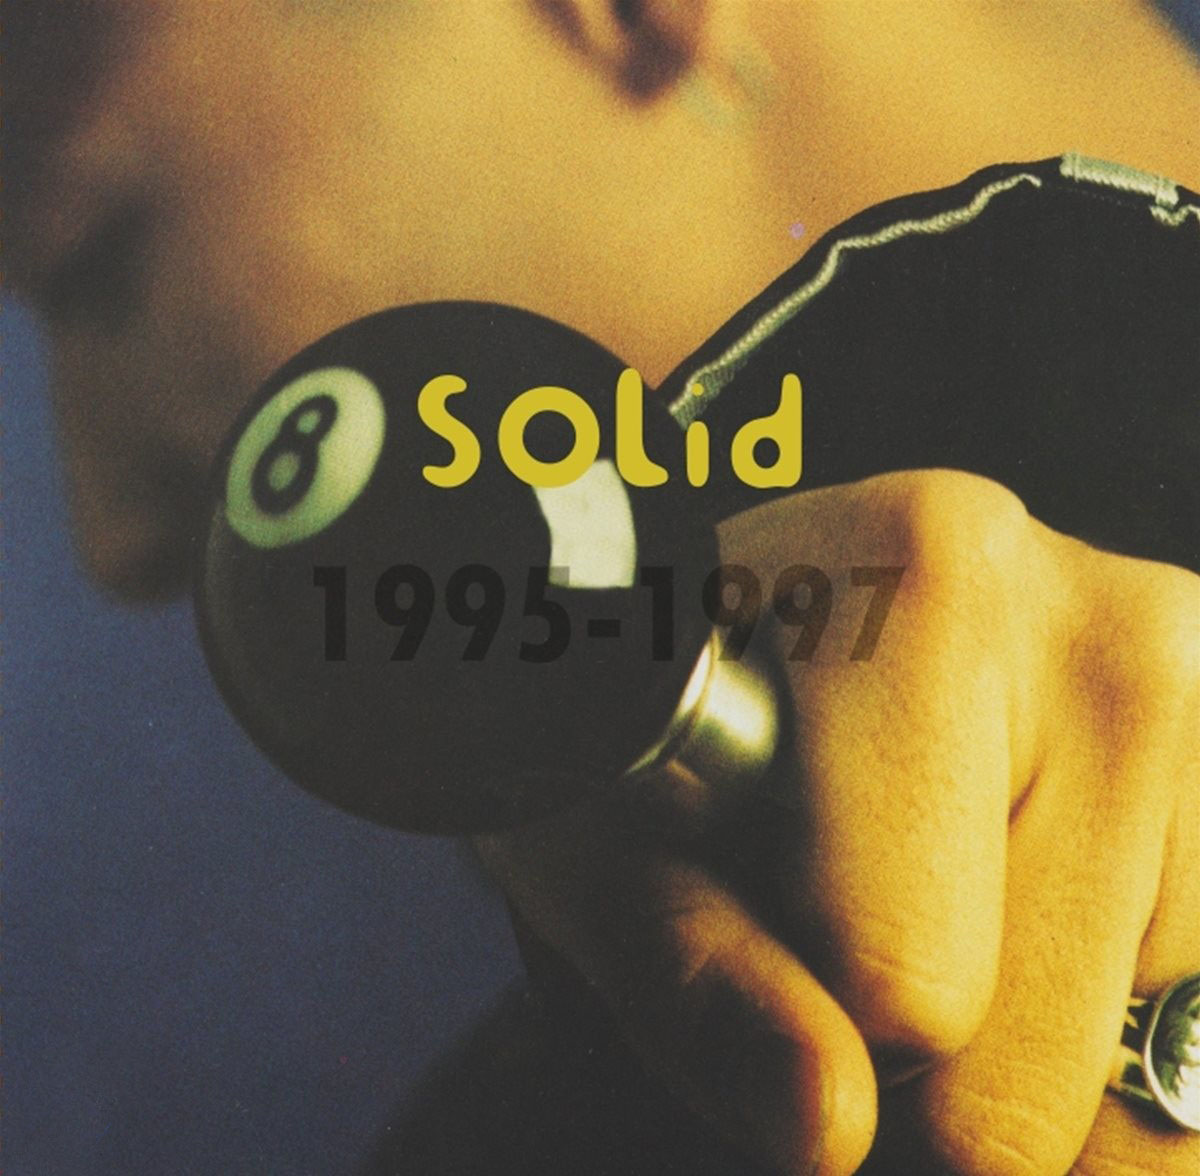 솔리드 - 2, 3, 4집 베스트 모음집 (1995-1997) [2LP]